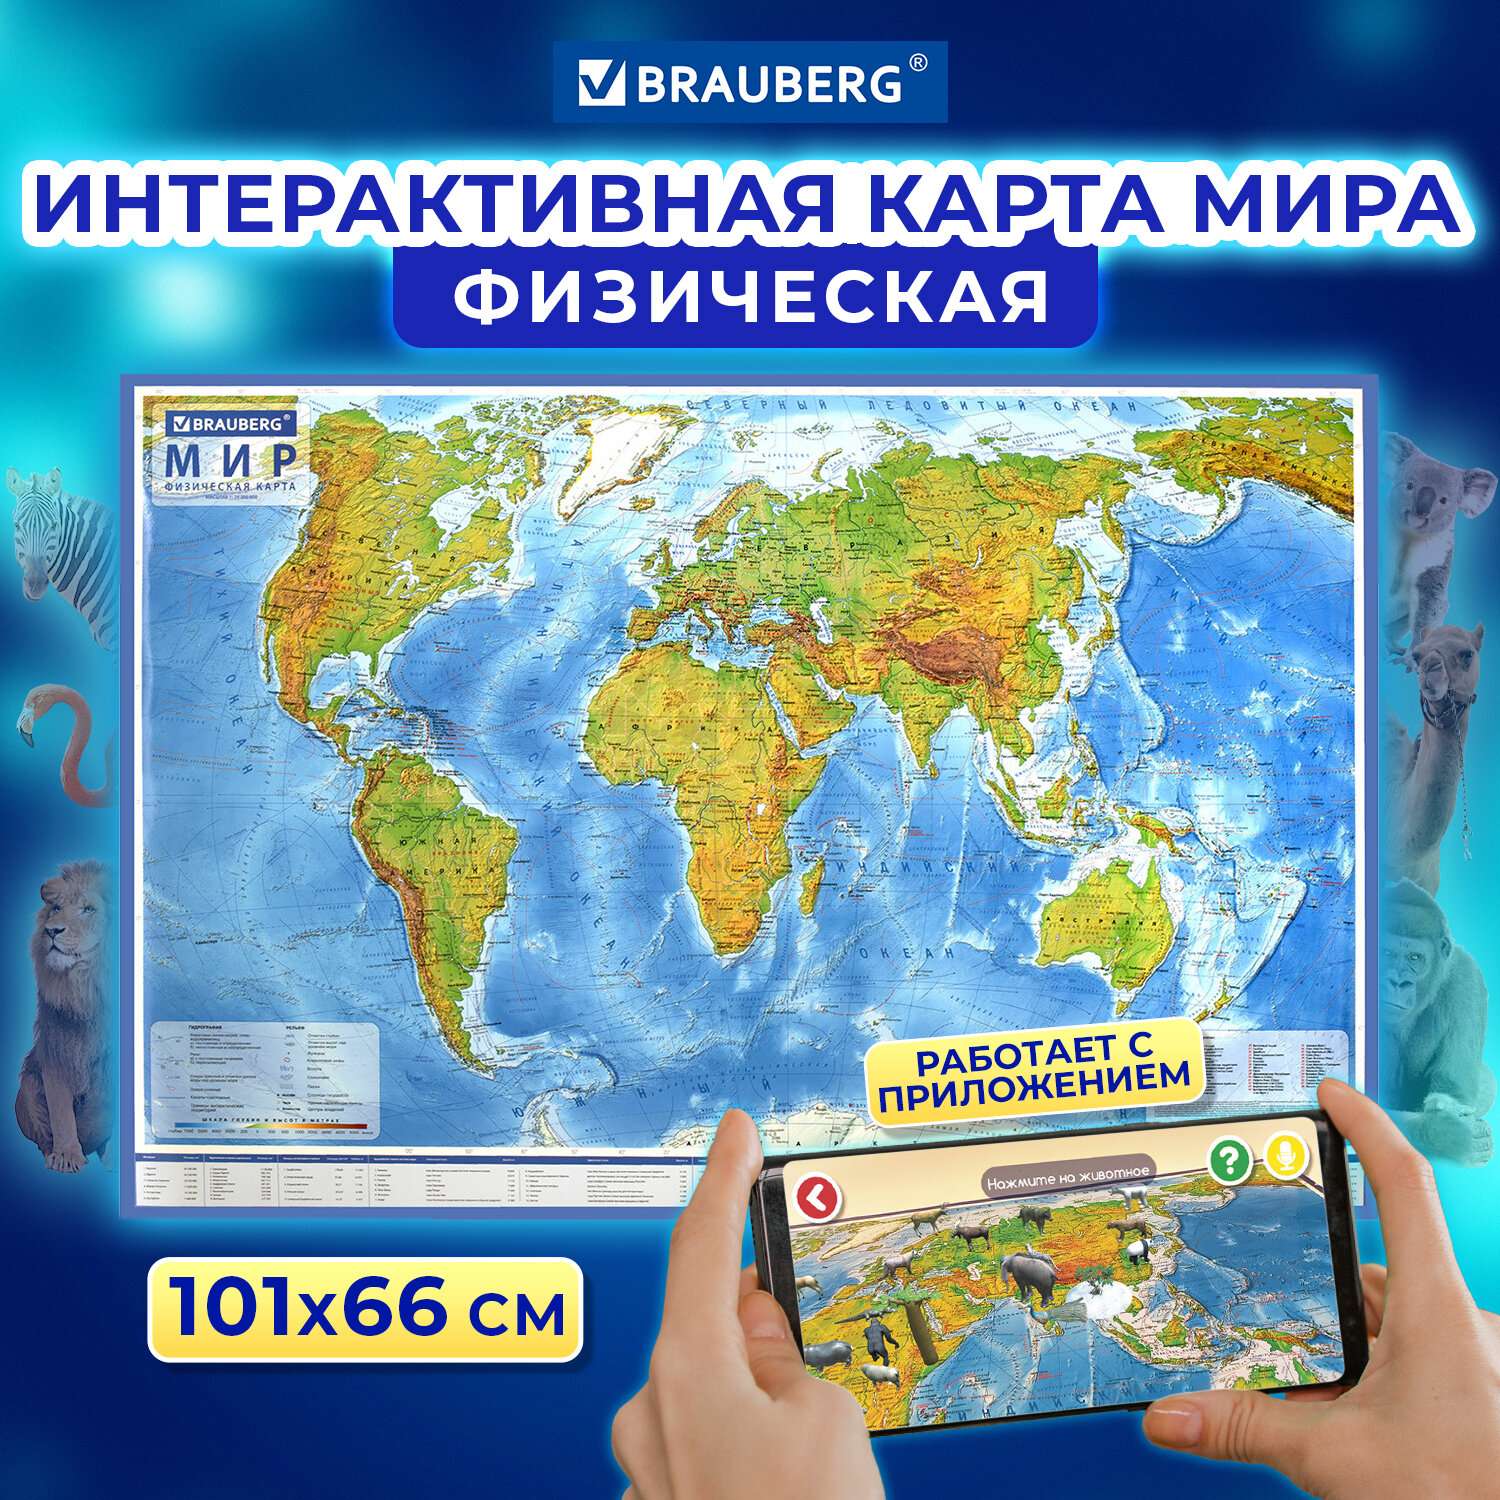 Карта мира Brauberg физическая 101х66 см 1:29М с ламинацией интерактивная в тубусе - фото 2